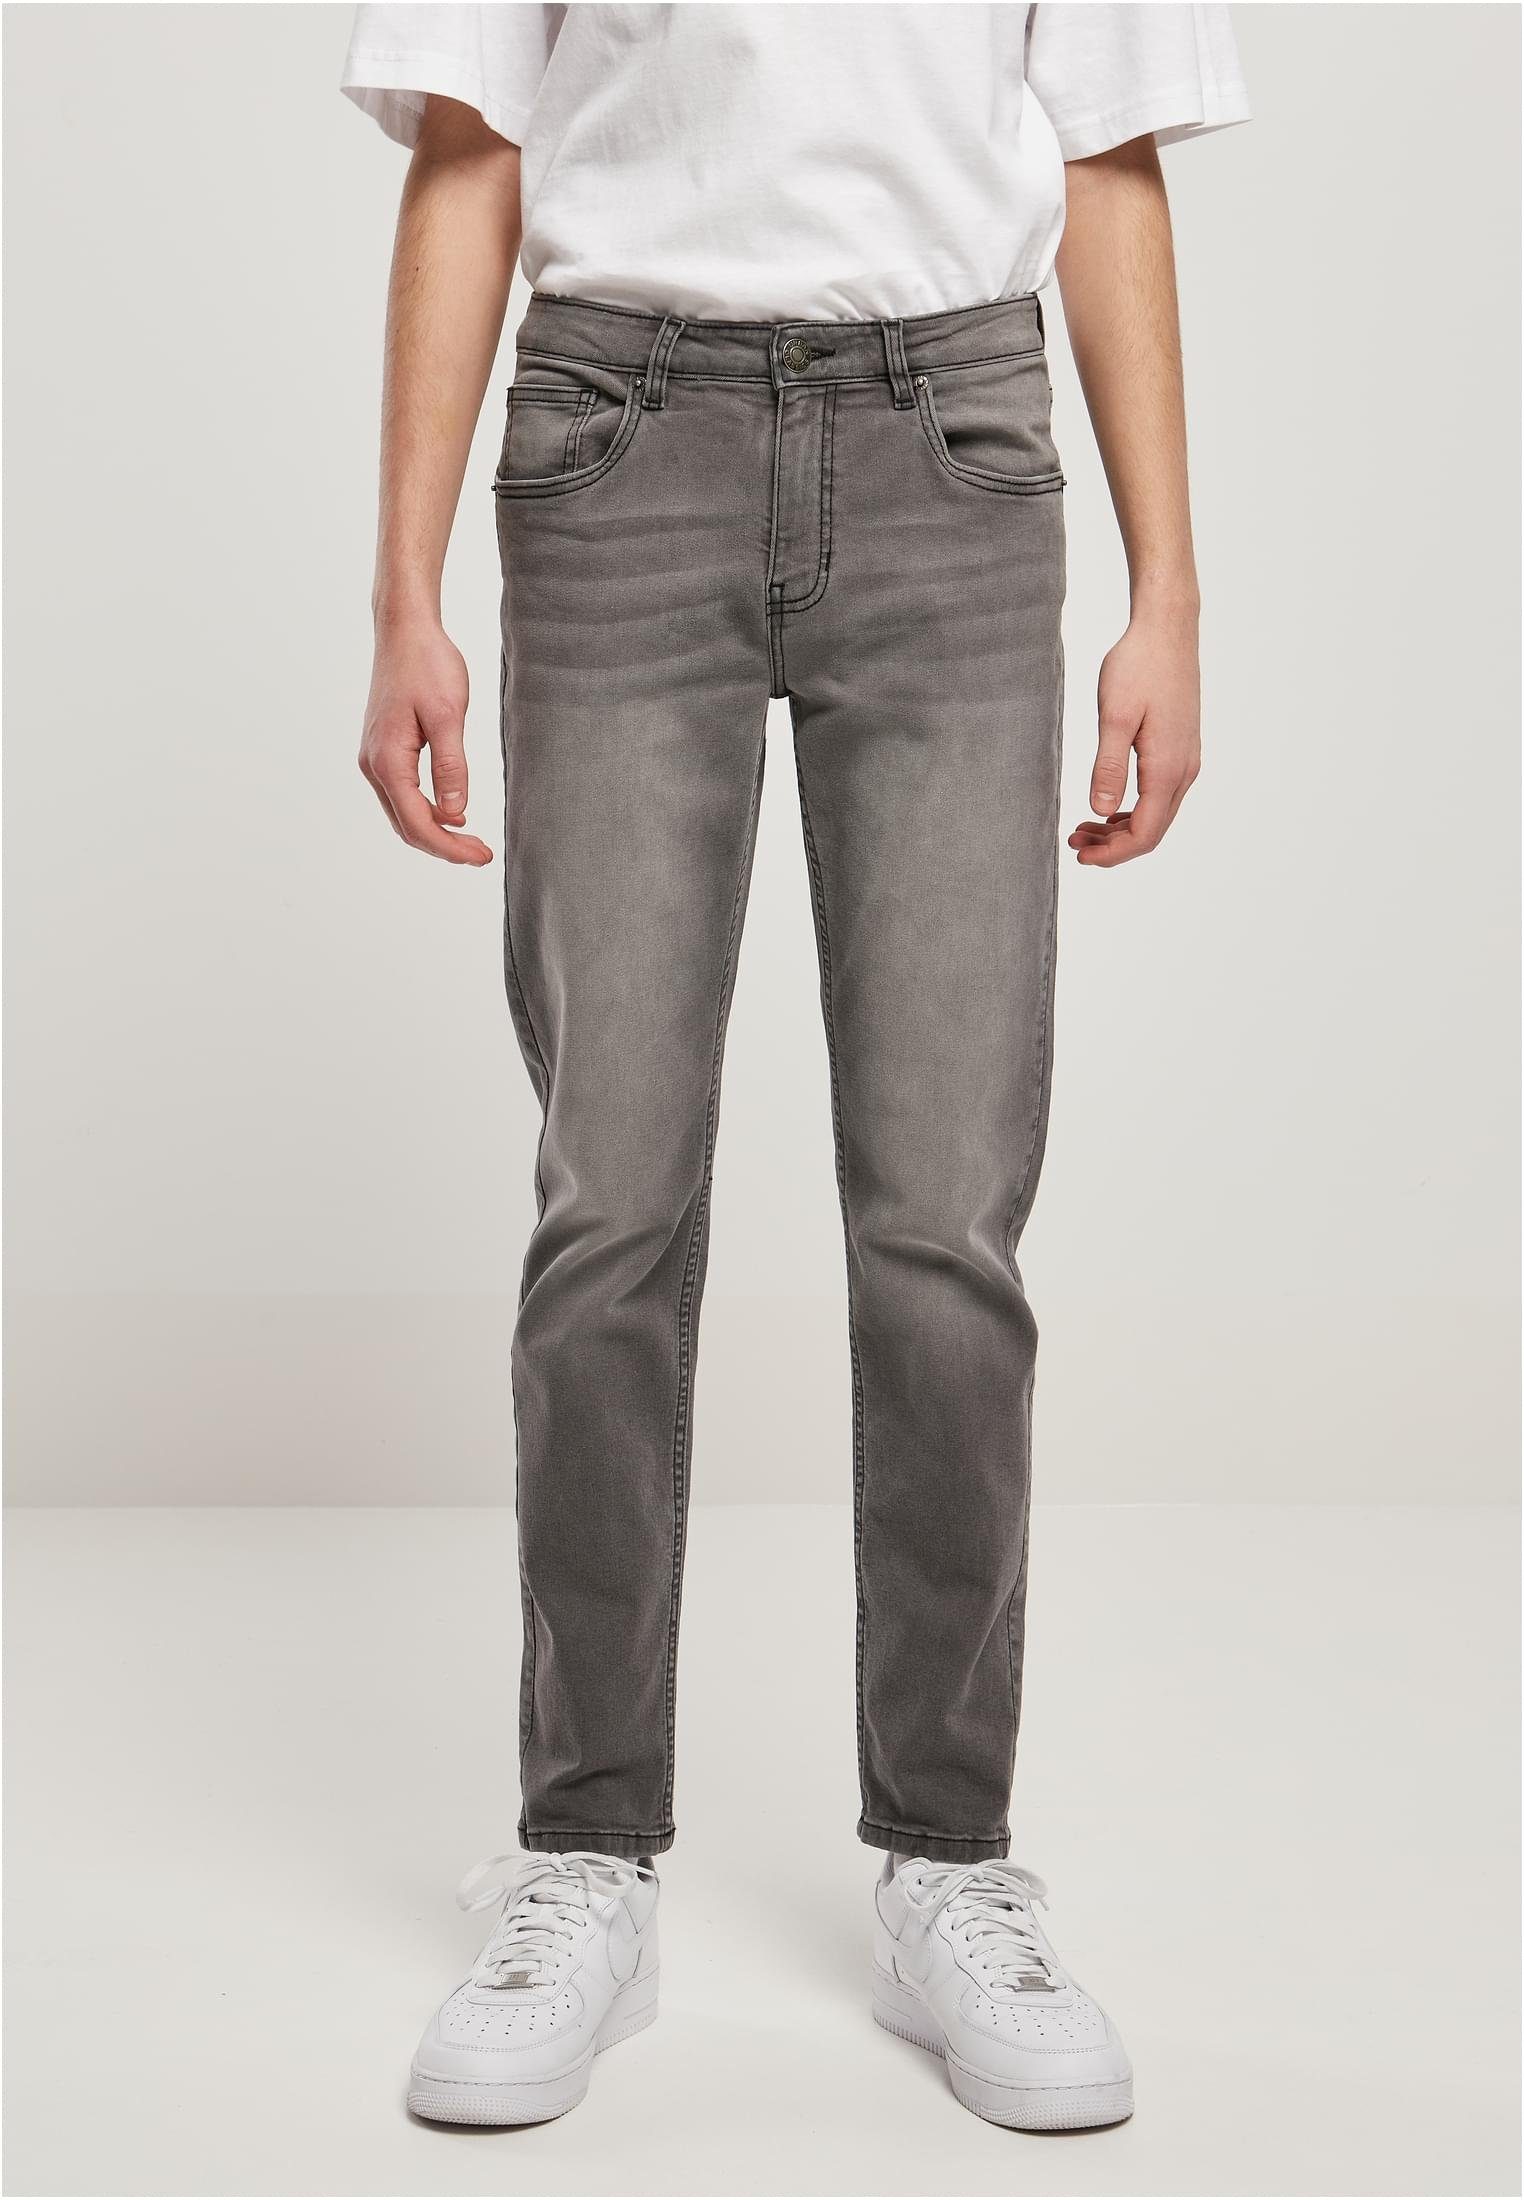 Pants Must-Have URBAN zu Bequeme Jeans kombinieren und daher (1-tlg), Stretch Denim Herren CLASSICS ein absolutes Grenzenlos